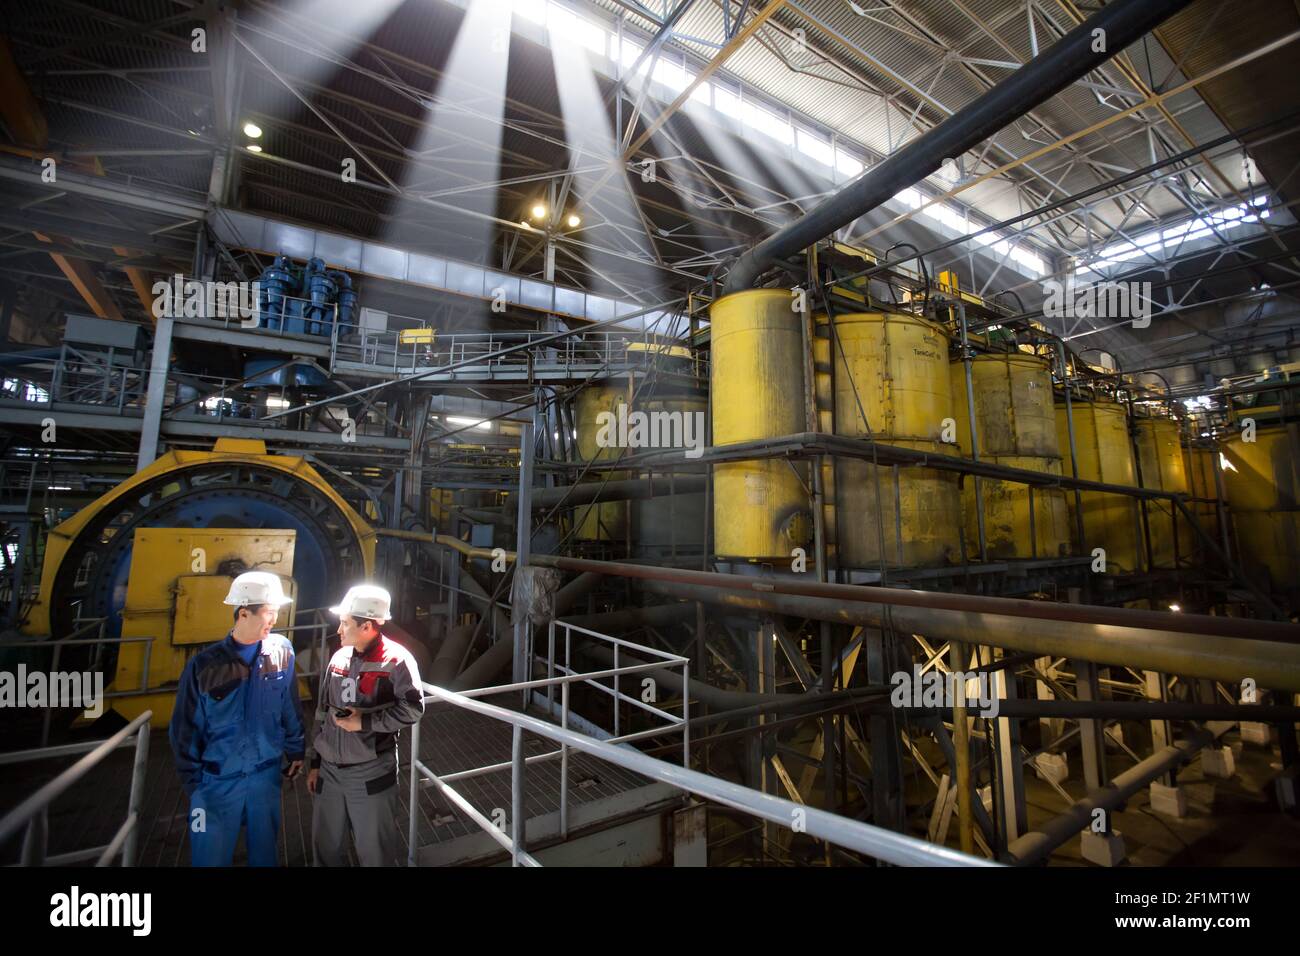 Khromtau/Kazakhstan - Mai 06 2012 : atelier sur les usines de concentration de minerai de cuivre. Équipement technologique Outokumpu. Deux ingénieurs asiatiques discutent sur l'industri Banque D'Images